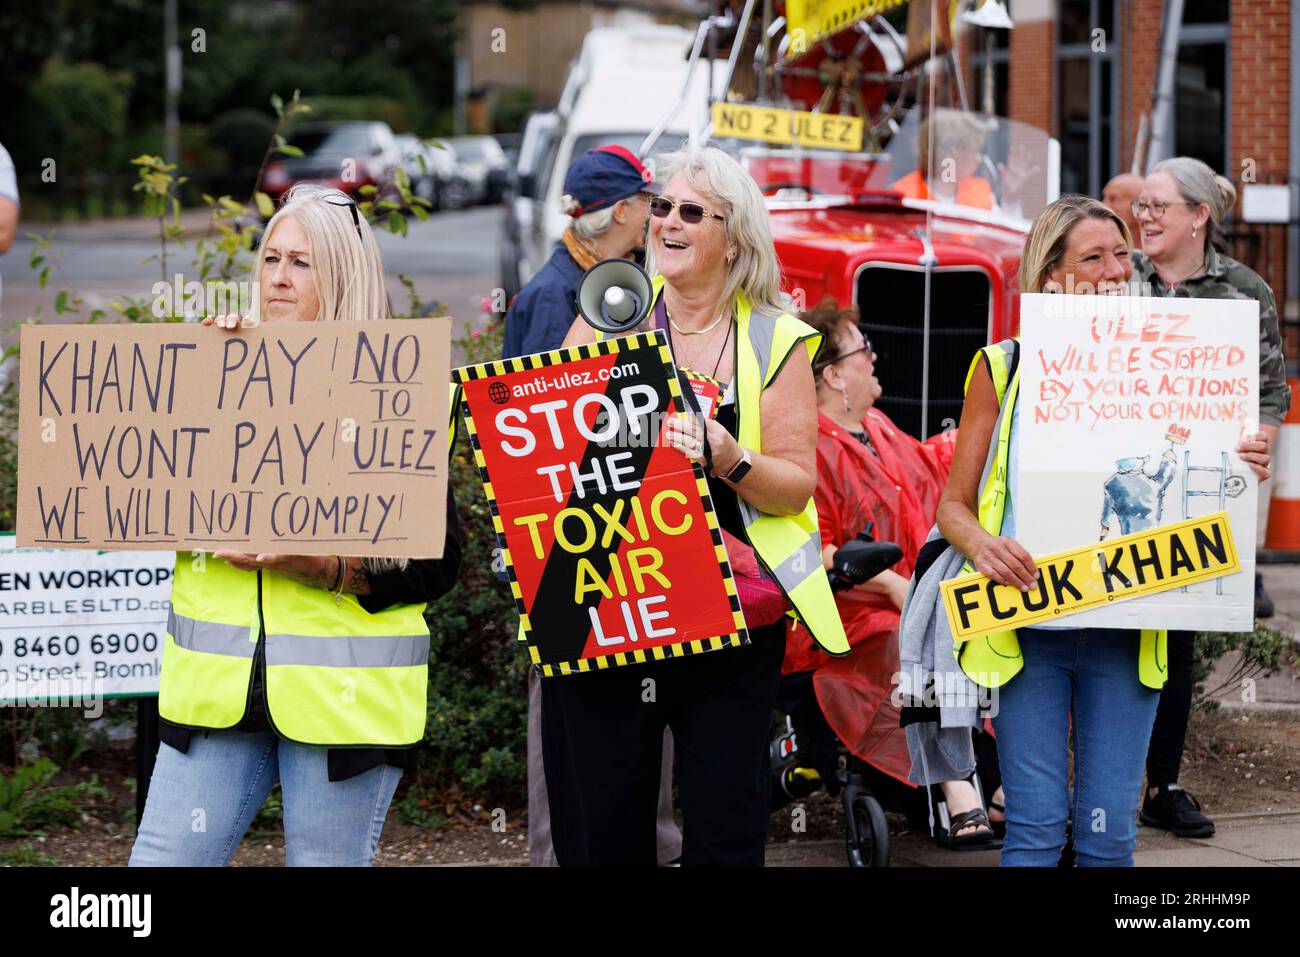 Manifestation anti-Ulez à Bromley, dans l'est de Londres cet après-midi. Photo : les manifestants lèvent des pancartes. Photo prise le 12 août 2023. © Belinda jiao jiao Banque D'Images